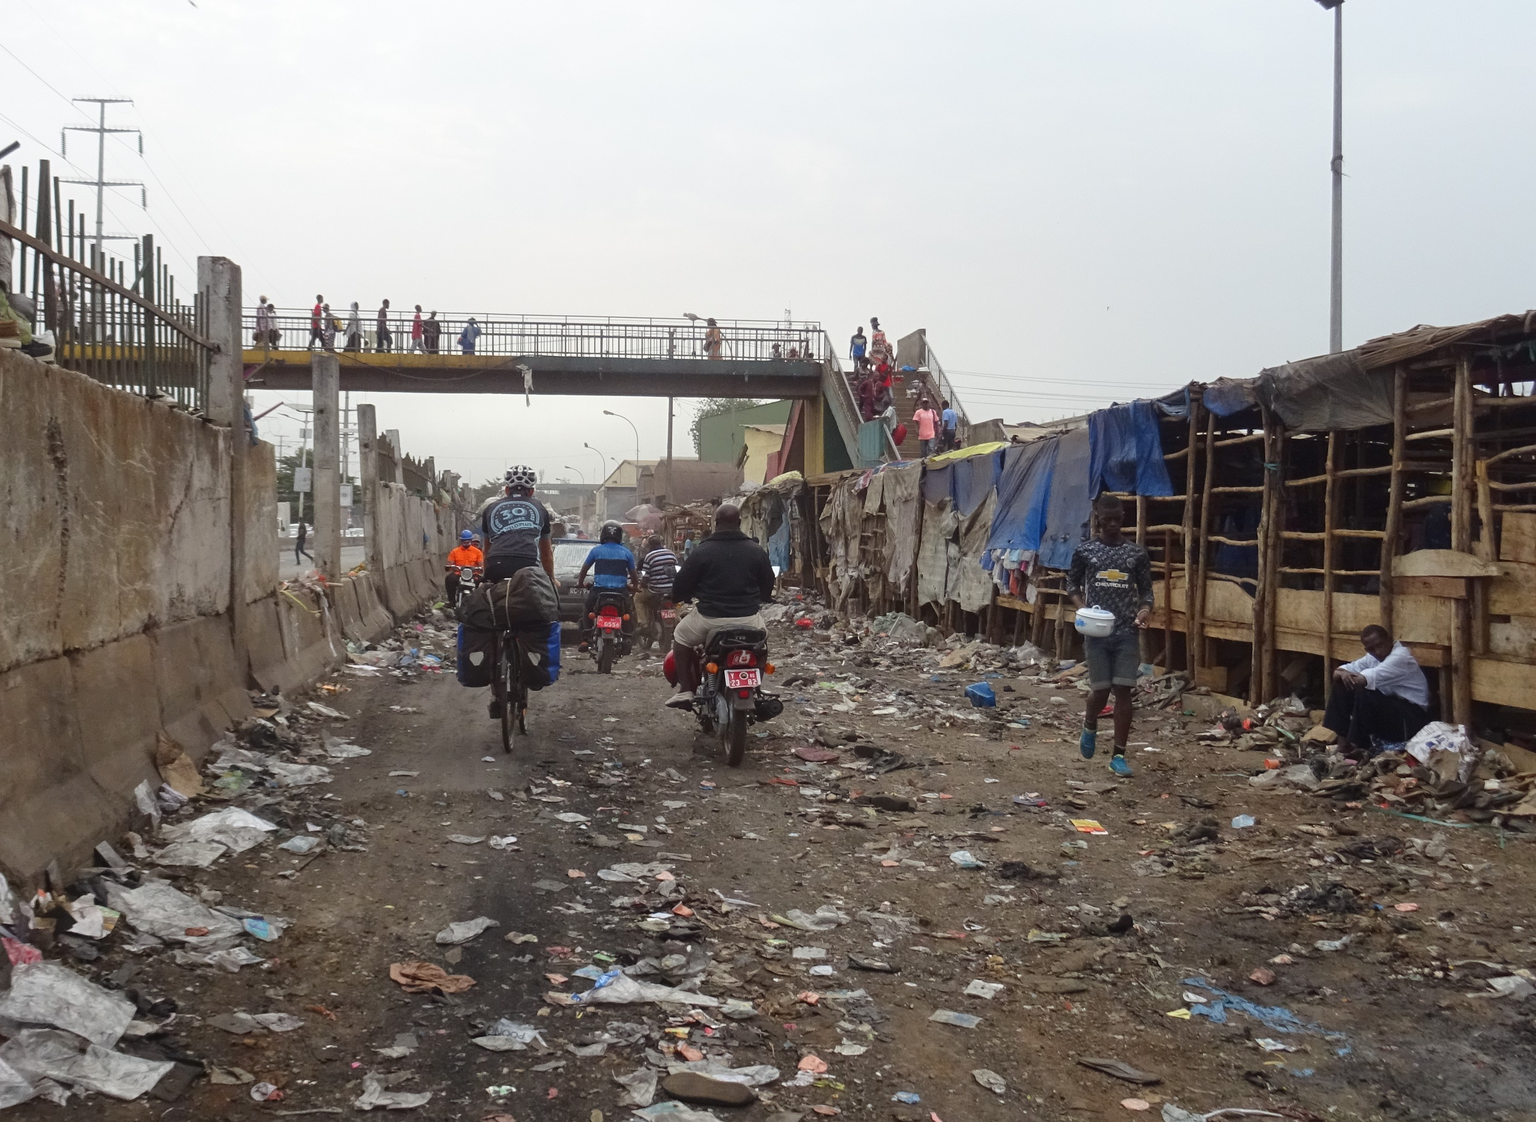 Bild 24
Guinea, Conakry (02.05.2019):
Leider ist das Abfallsystem vielerorts nicht geregelt, wie auch hier auf unserem Weg aus der Hauptstadt von Guinea. Eine traurige Tatsache! Der Geruch in der Luft ...